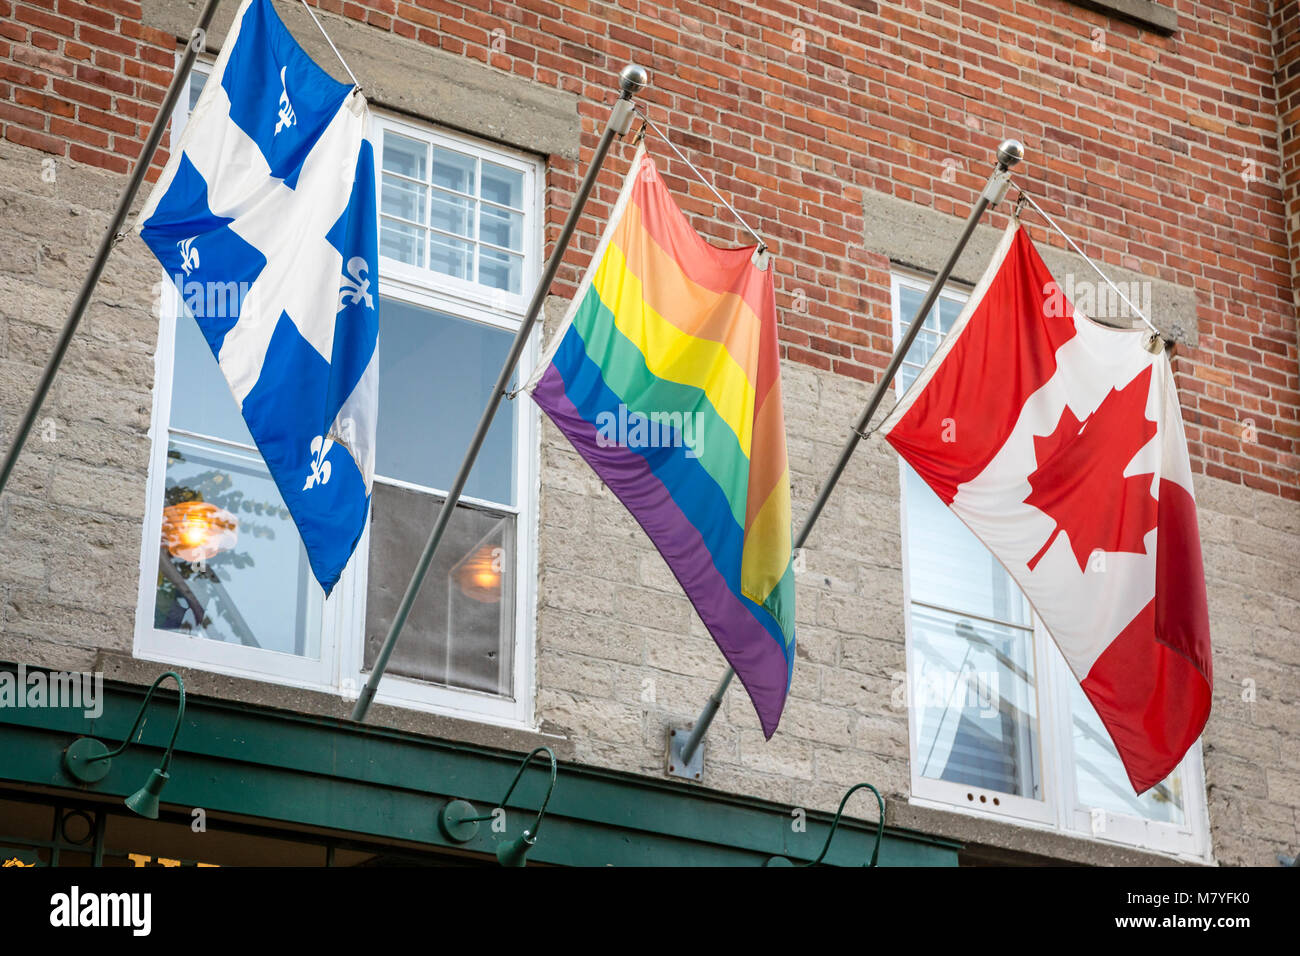 Drei Flaggen in der Stadt Quebec hängen. Kanada, Quebec Provincial, und ein Regenbogen Fag. Stockfoto